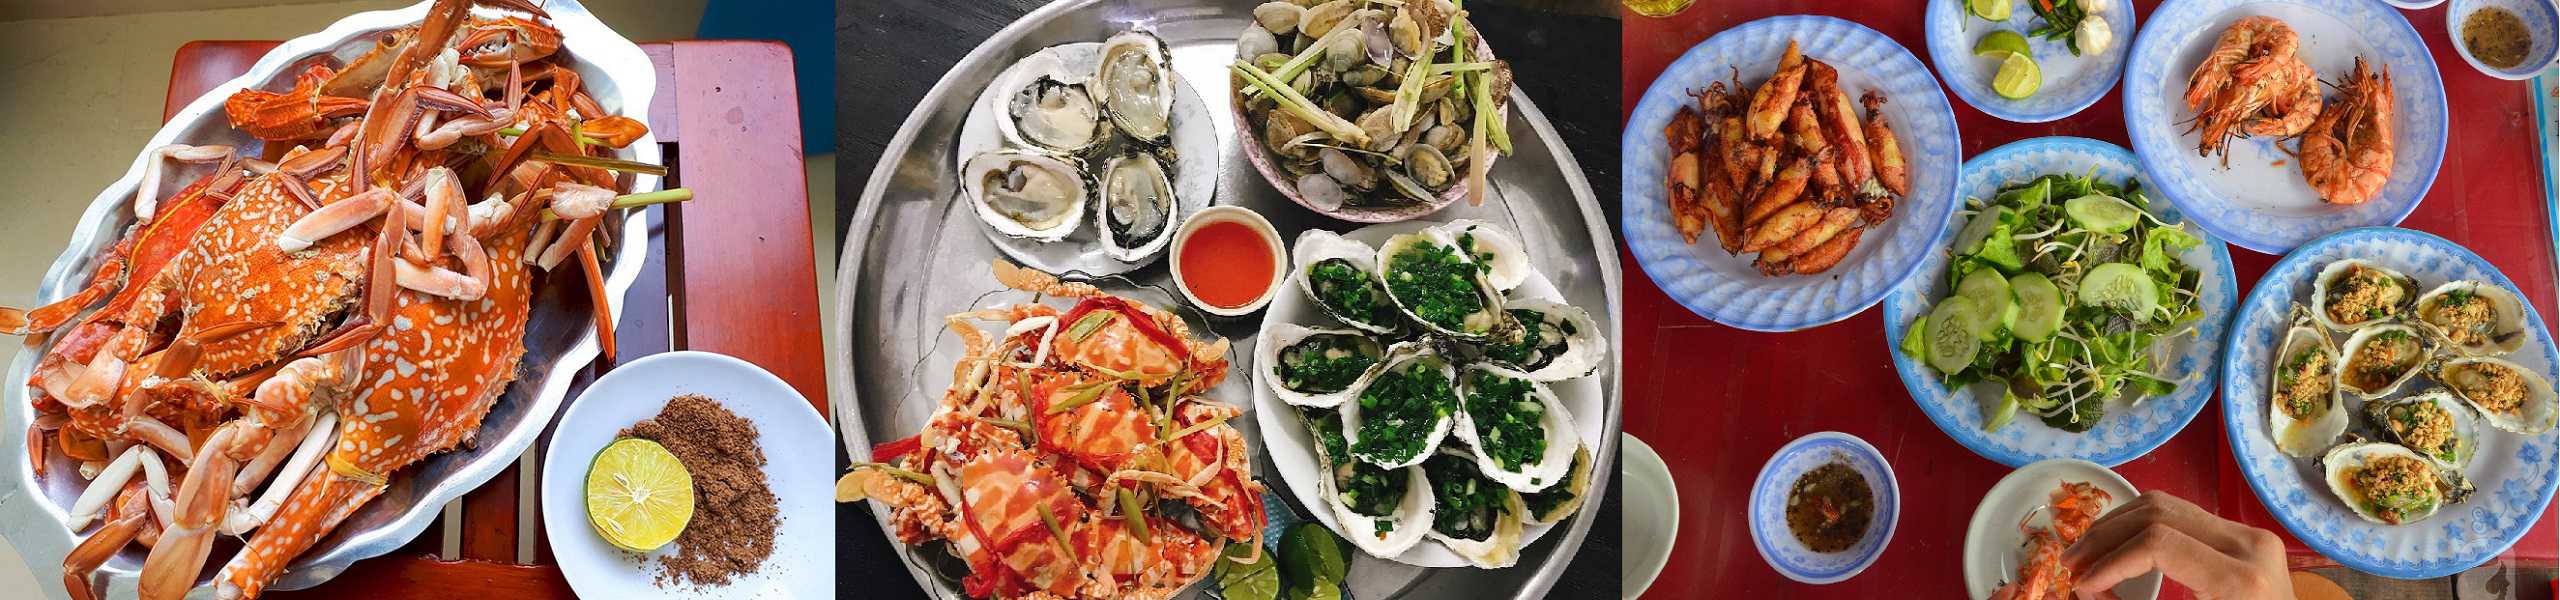 Món ăn, quán ăn hải sản ngon ở Đà Nẵng. Ăn hải sản ở đâu Đà Nẵng? Những món hải sản ngon rẻ ở Đà Nẵng